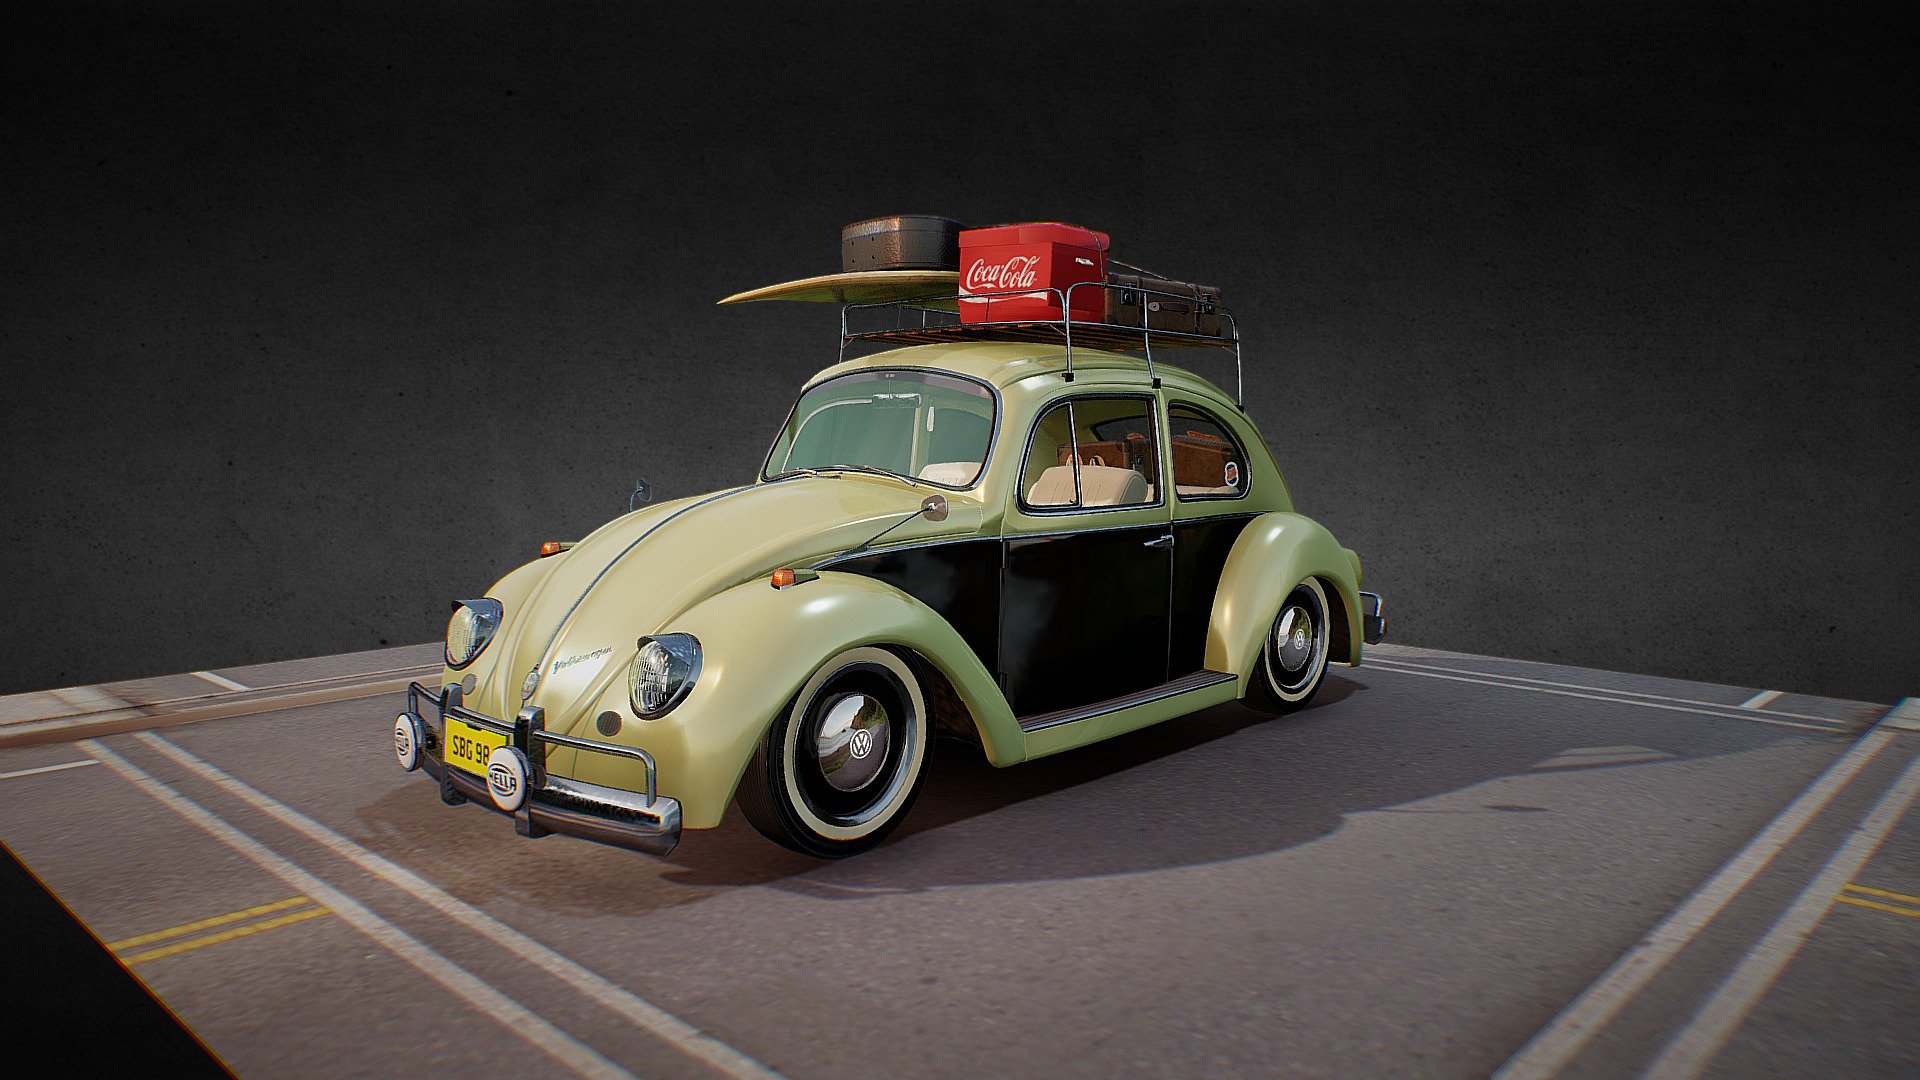 VW Bettle - 3D model by P.Thomson (@pete_thomson) 3d model